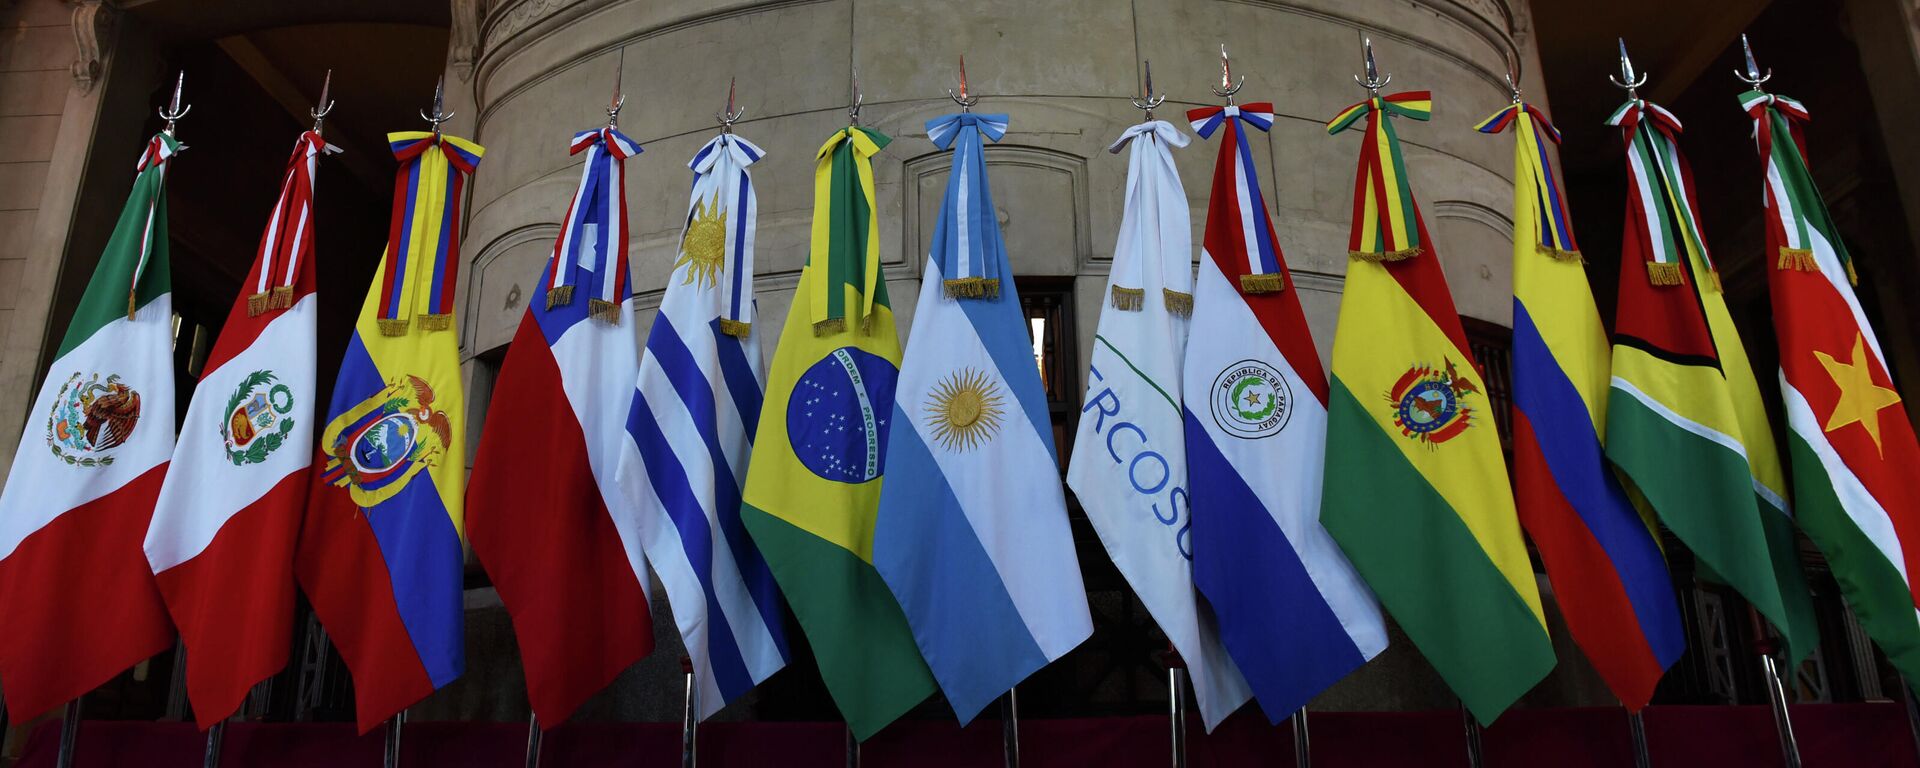 Banderas de miembros del Mercosur y Estados asociados - Sputnik Mundo, 1920, 05.07.2021